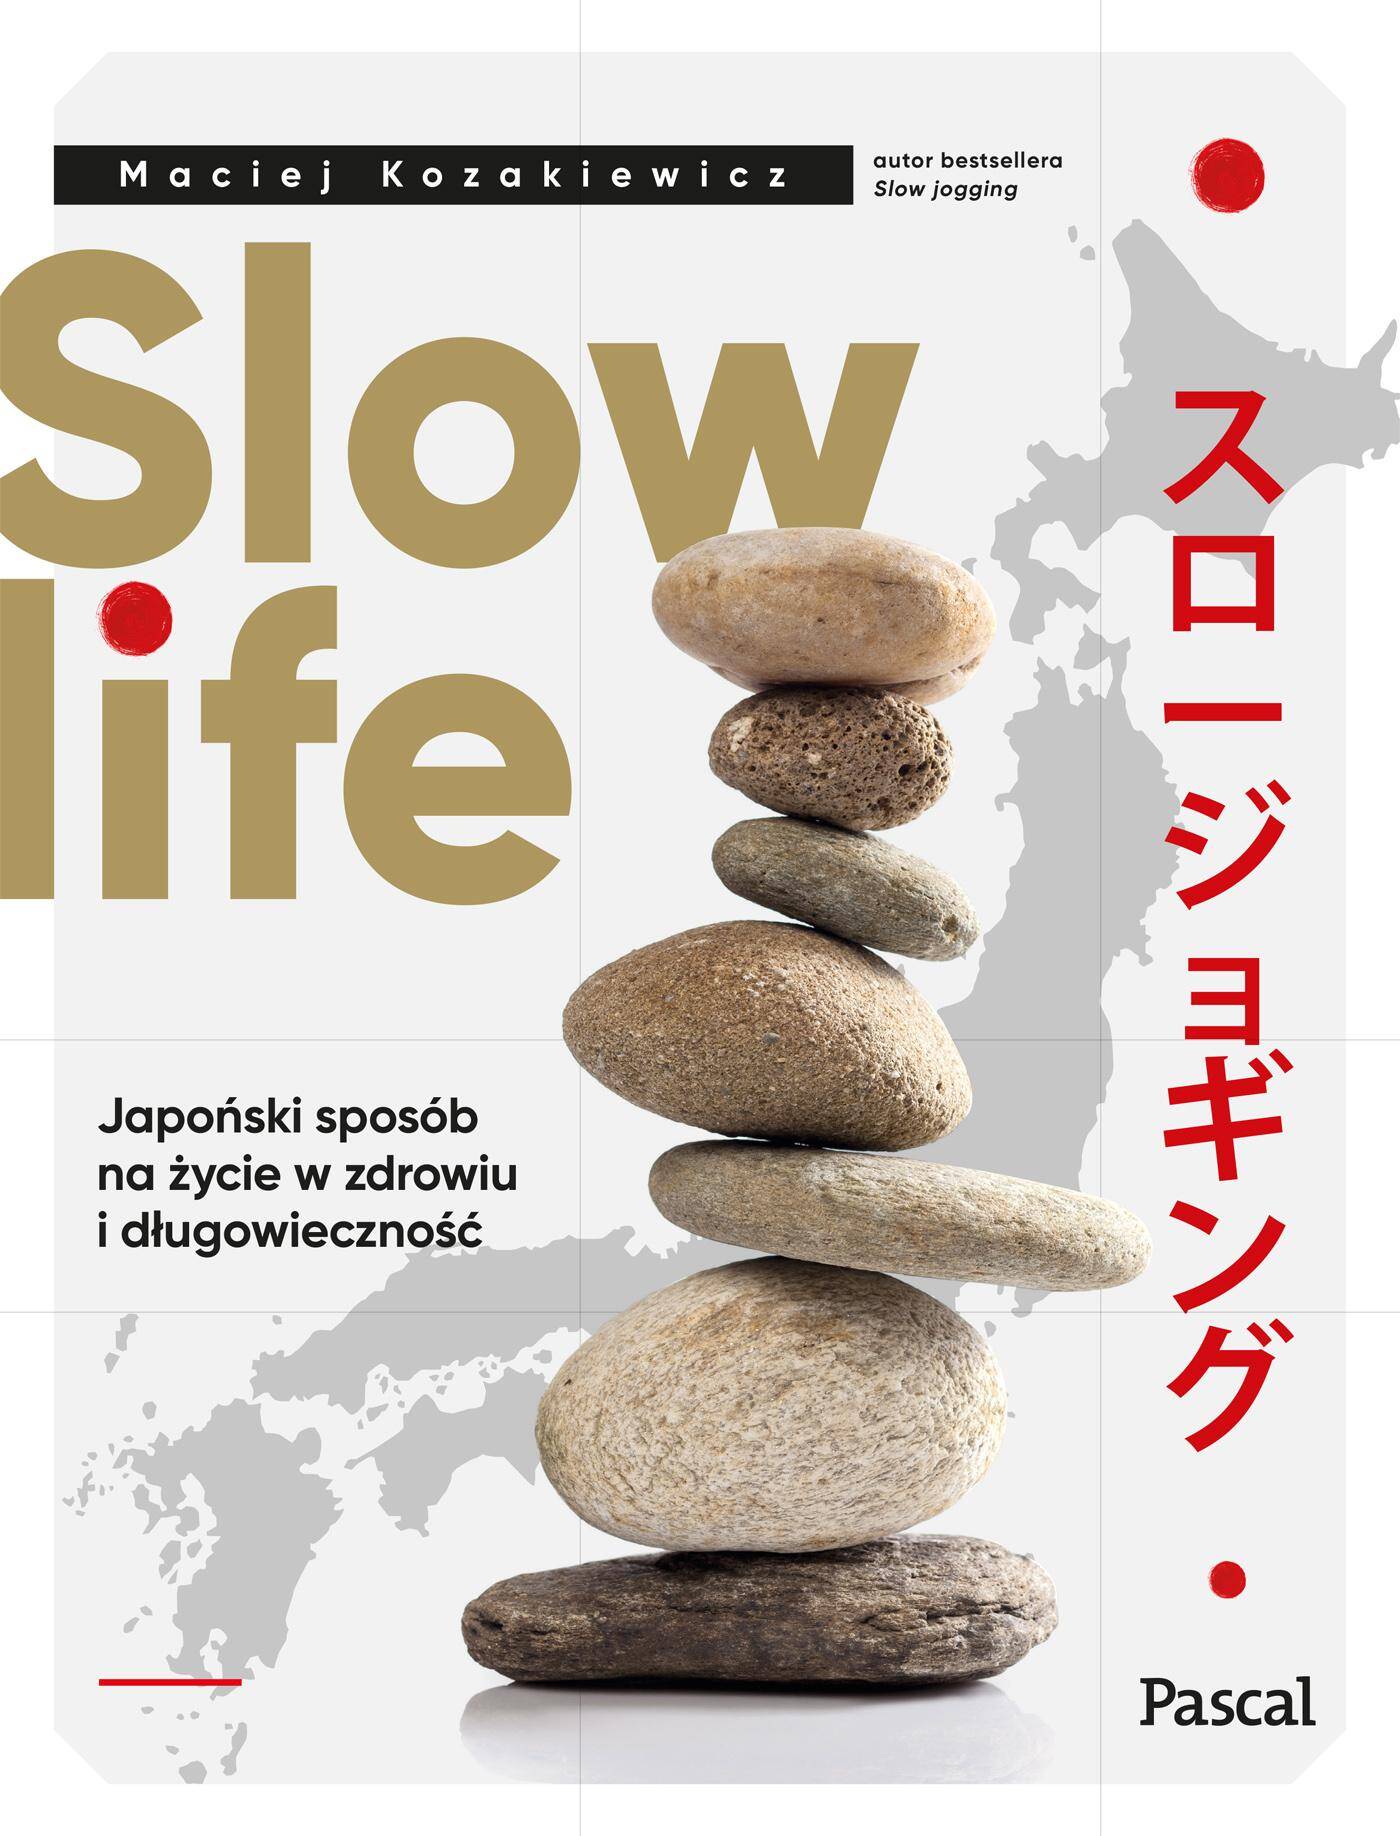 Slow life. Japoński sposób na życie w zdrowiu i długowieczność